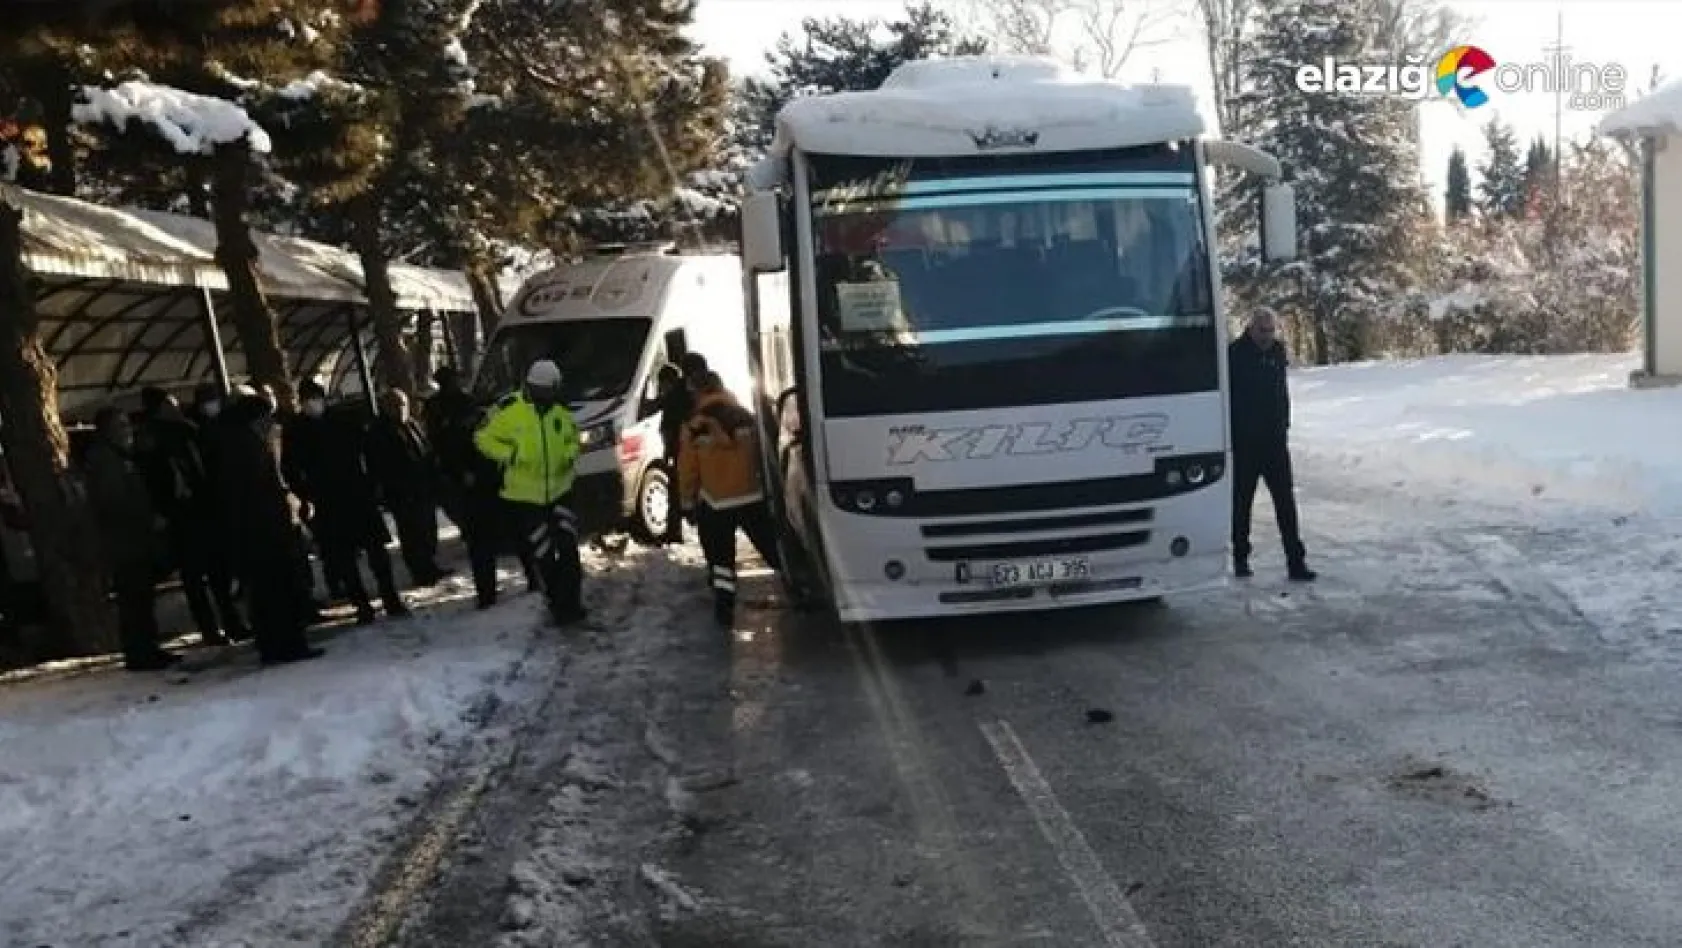 Elazığ'da minibüsün altında kalan kadın hayatını kaybetti